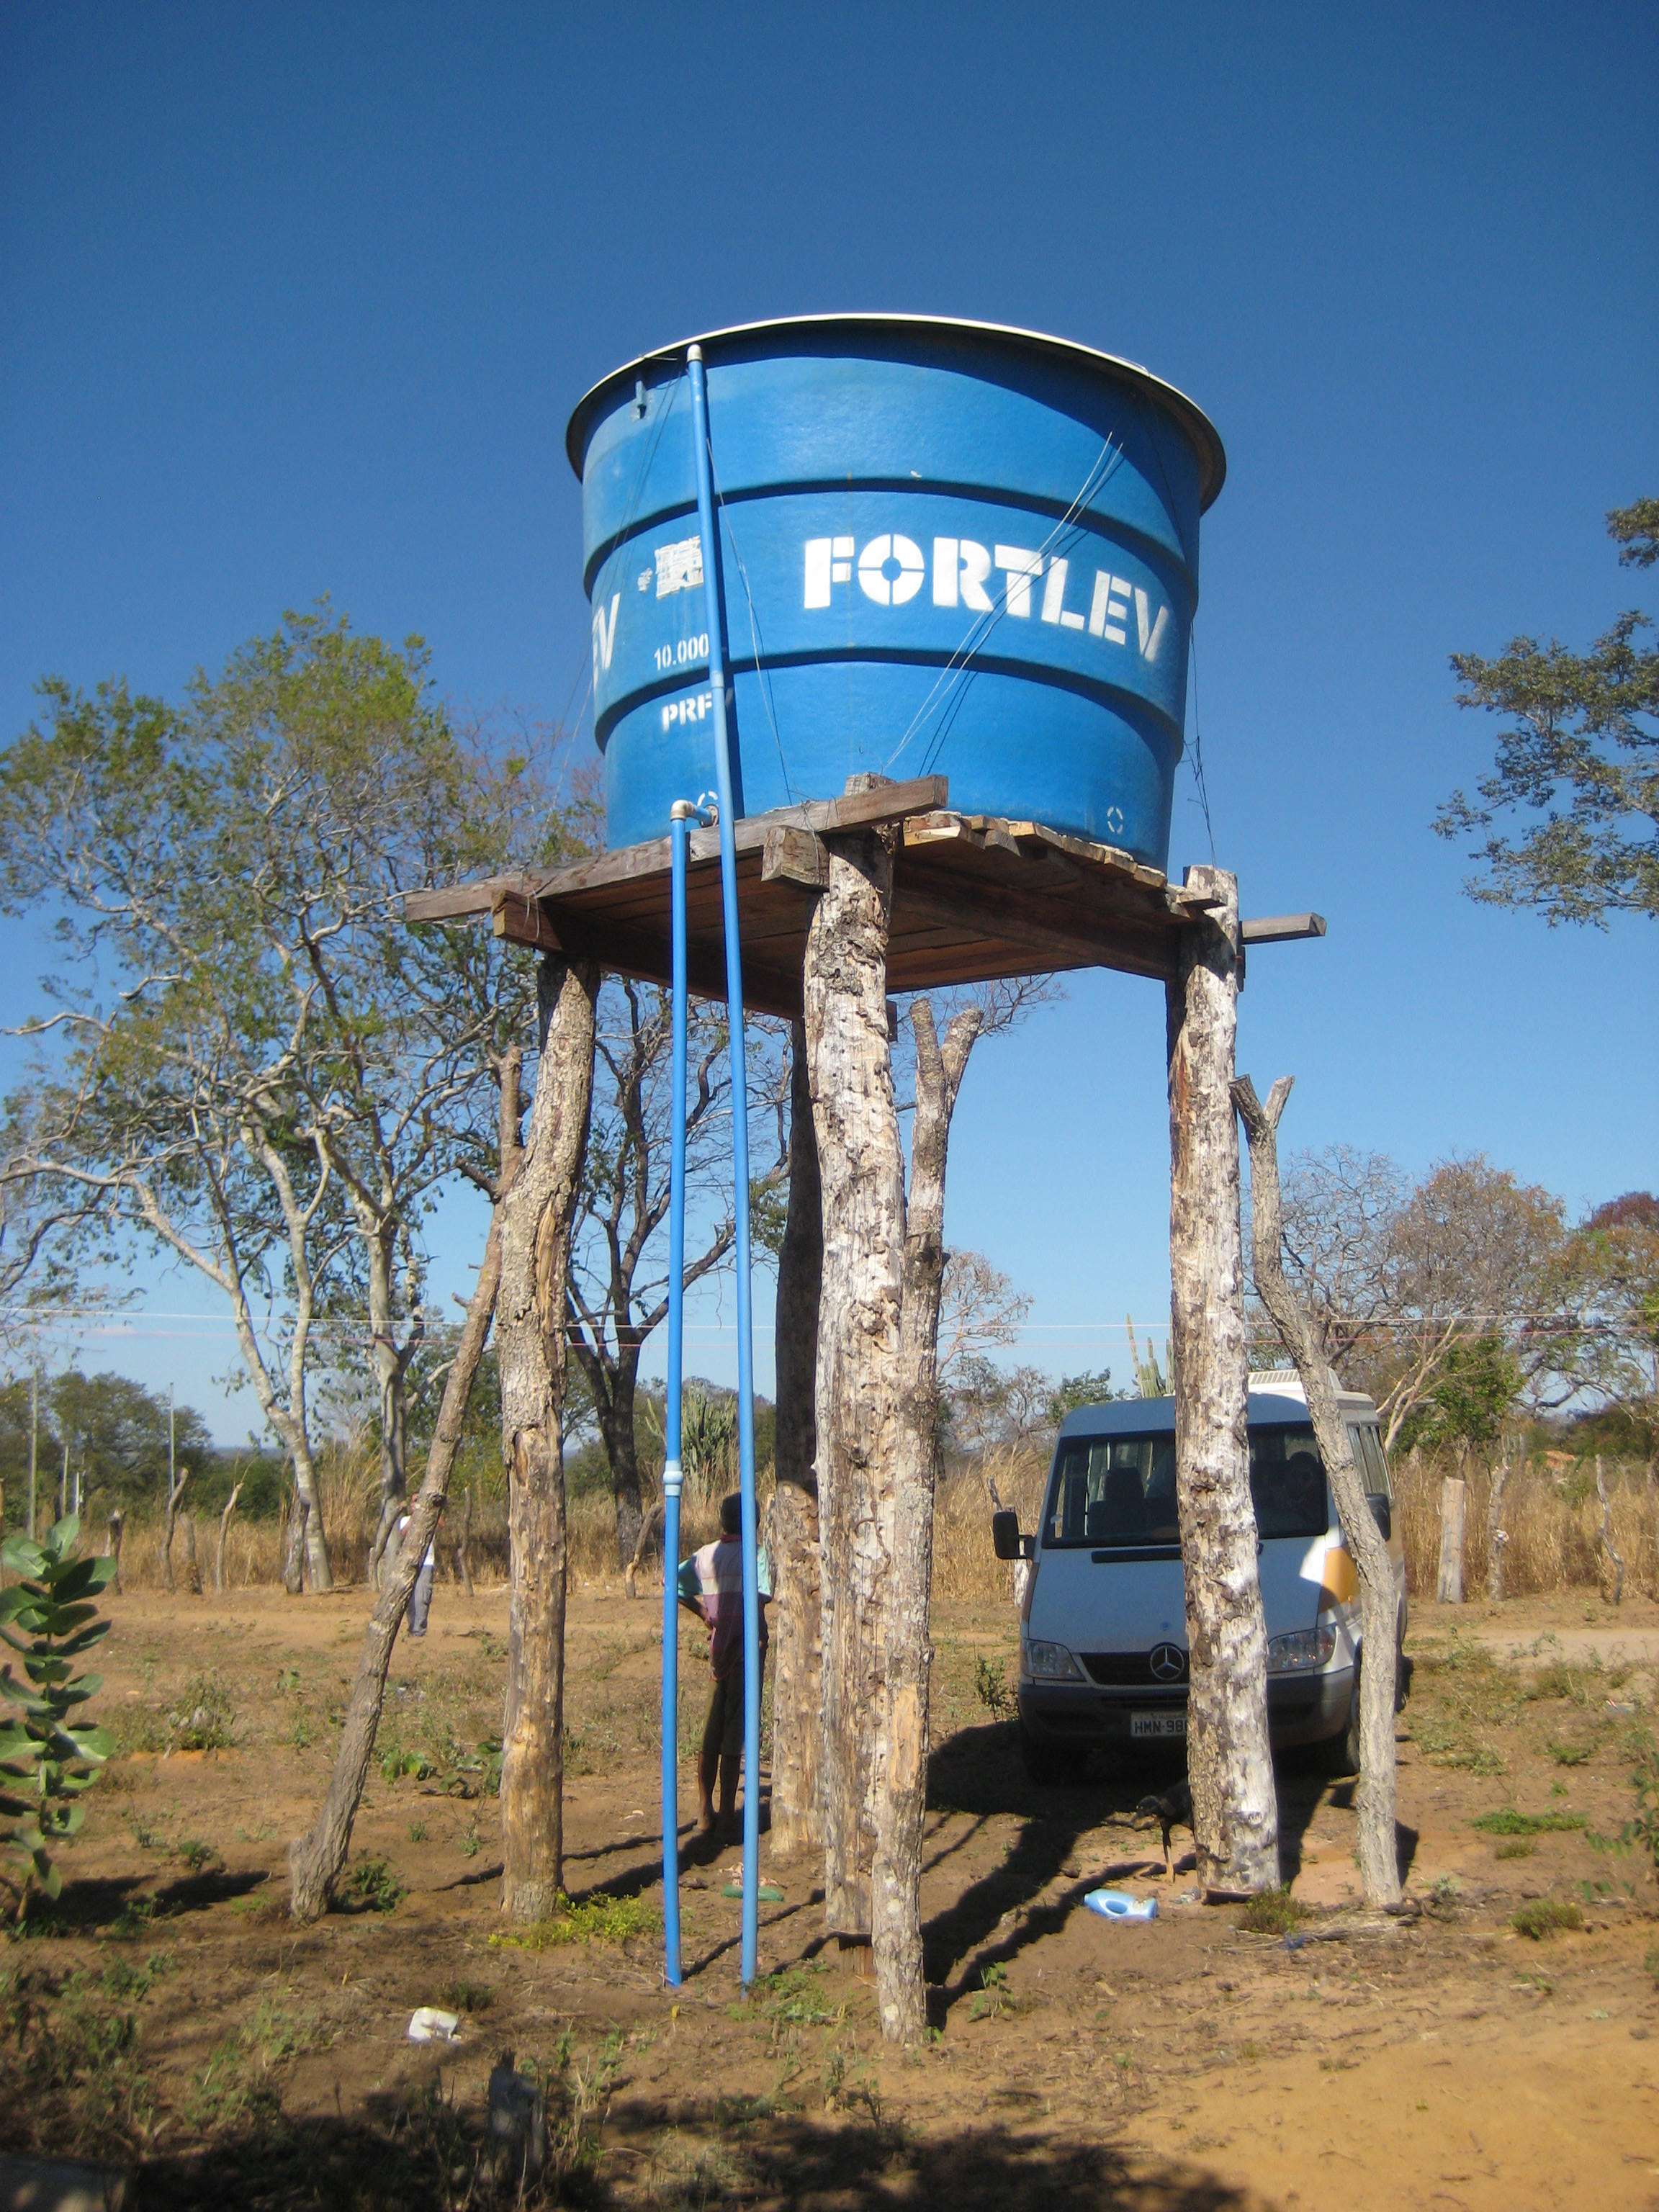 Tanque de agua para distribución colectiva, comunidad de Lagedo, São Francisco, MG